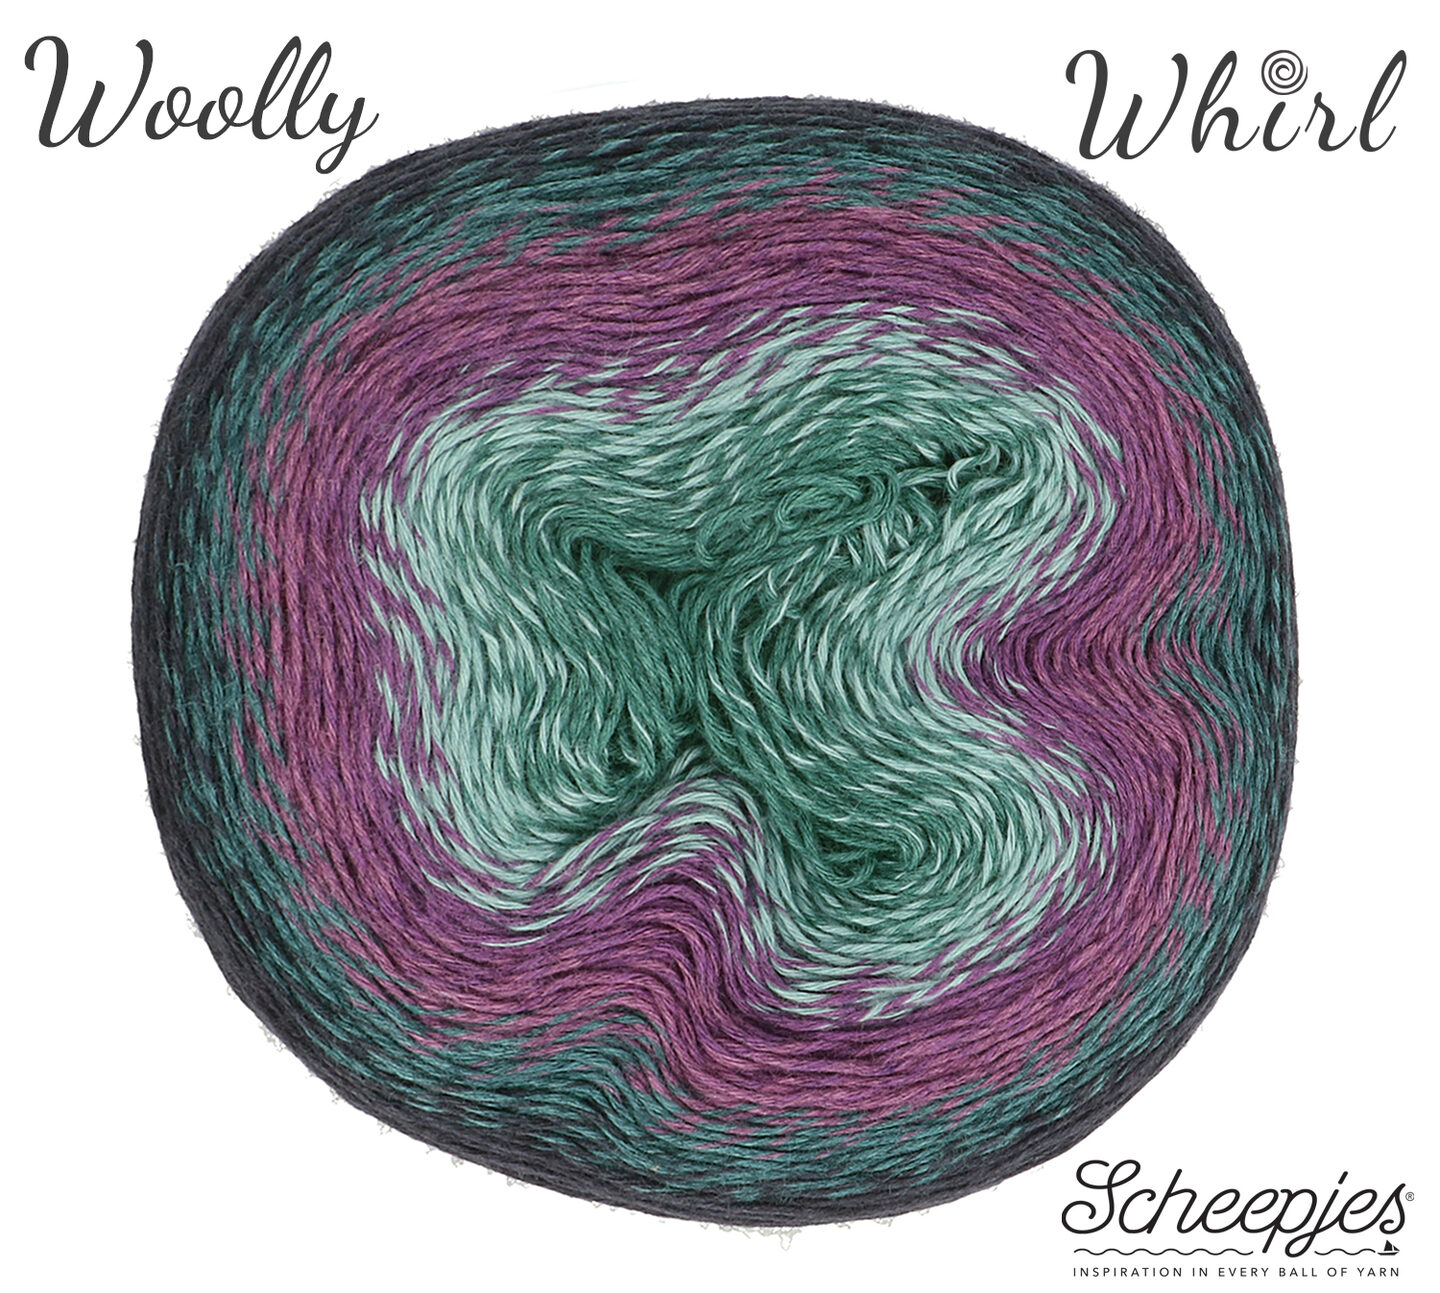 特価商品 ⭐️送料込⭐️ ウール混海外毛糸 whirl woolly scheepjes 生地/糸 - il-gimnaziya-1.com.ua